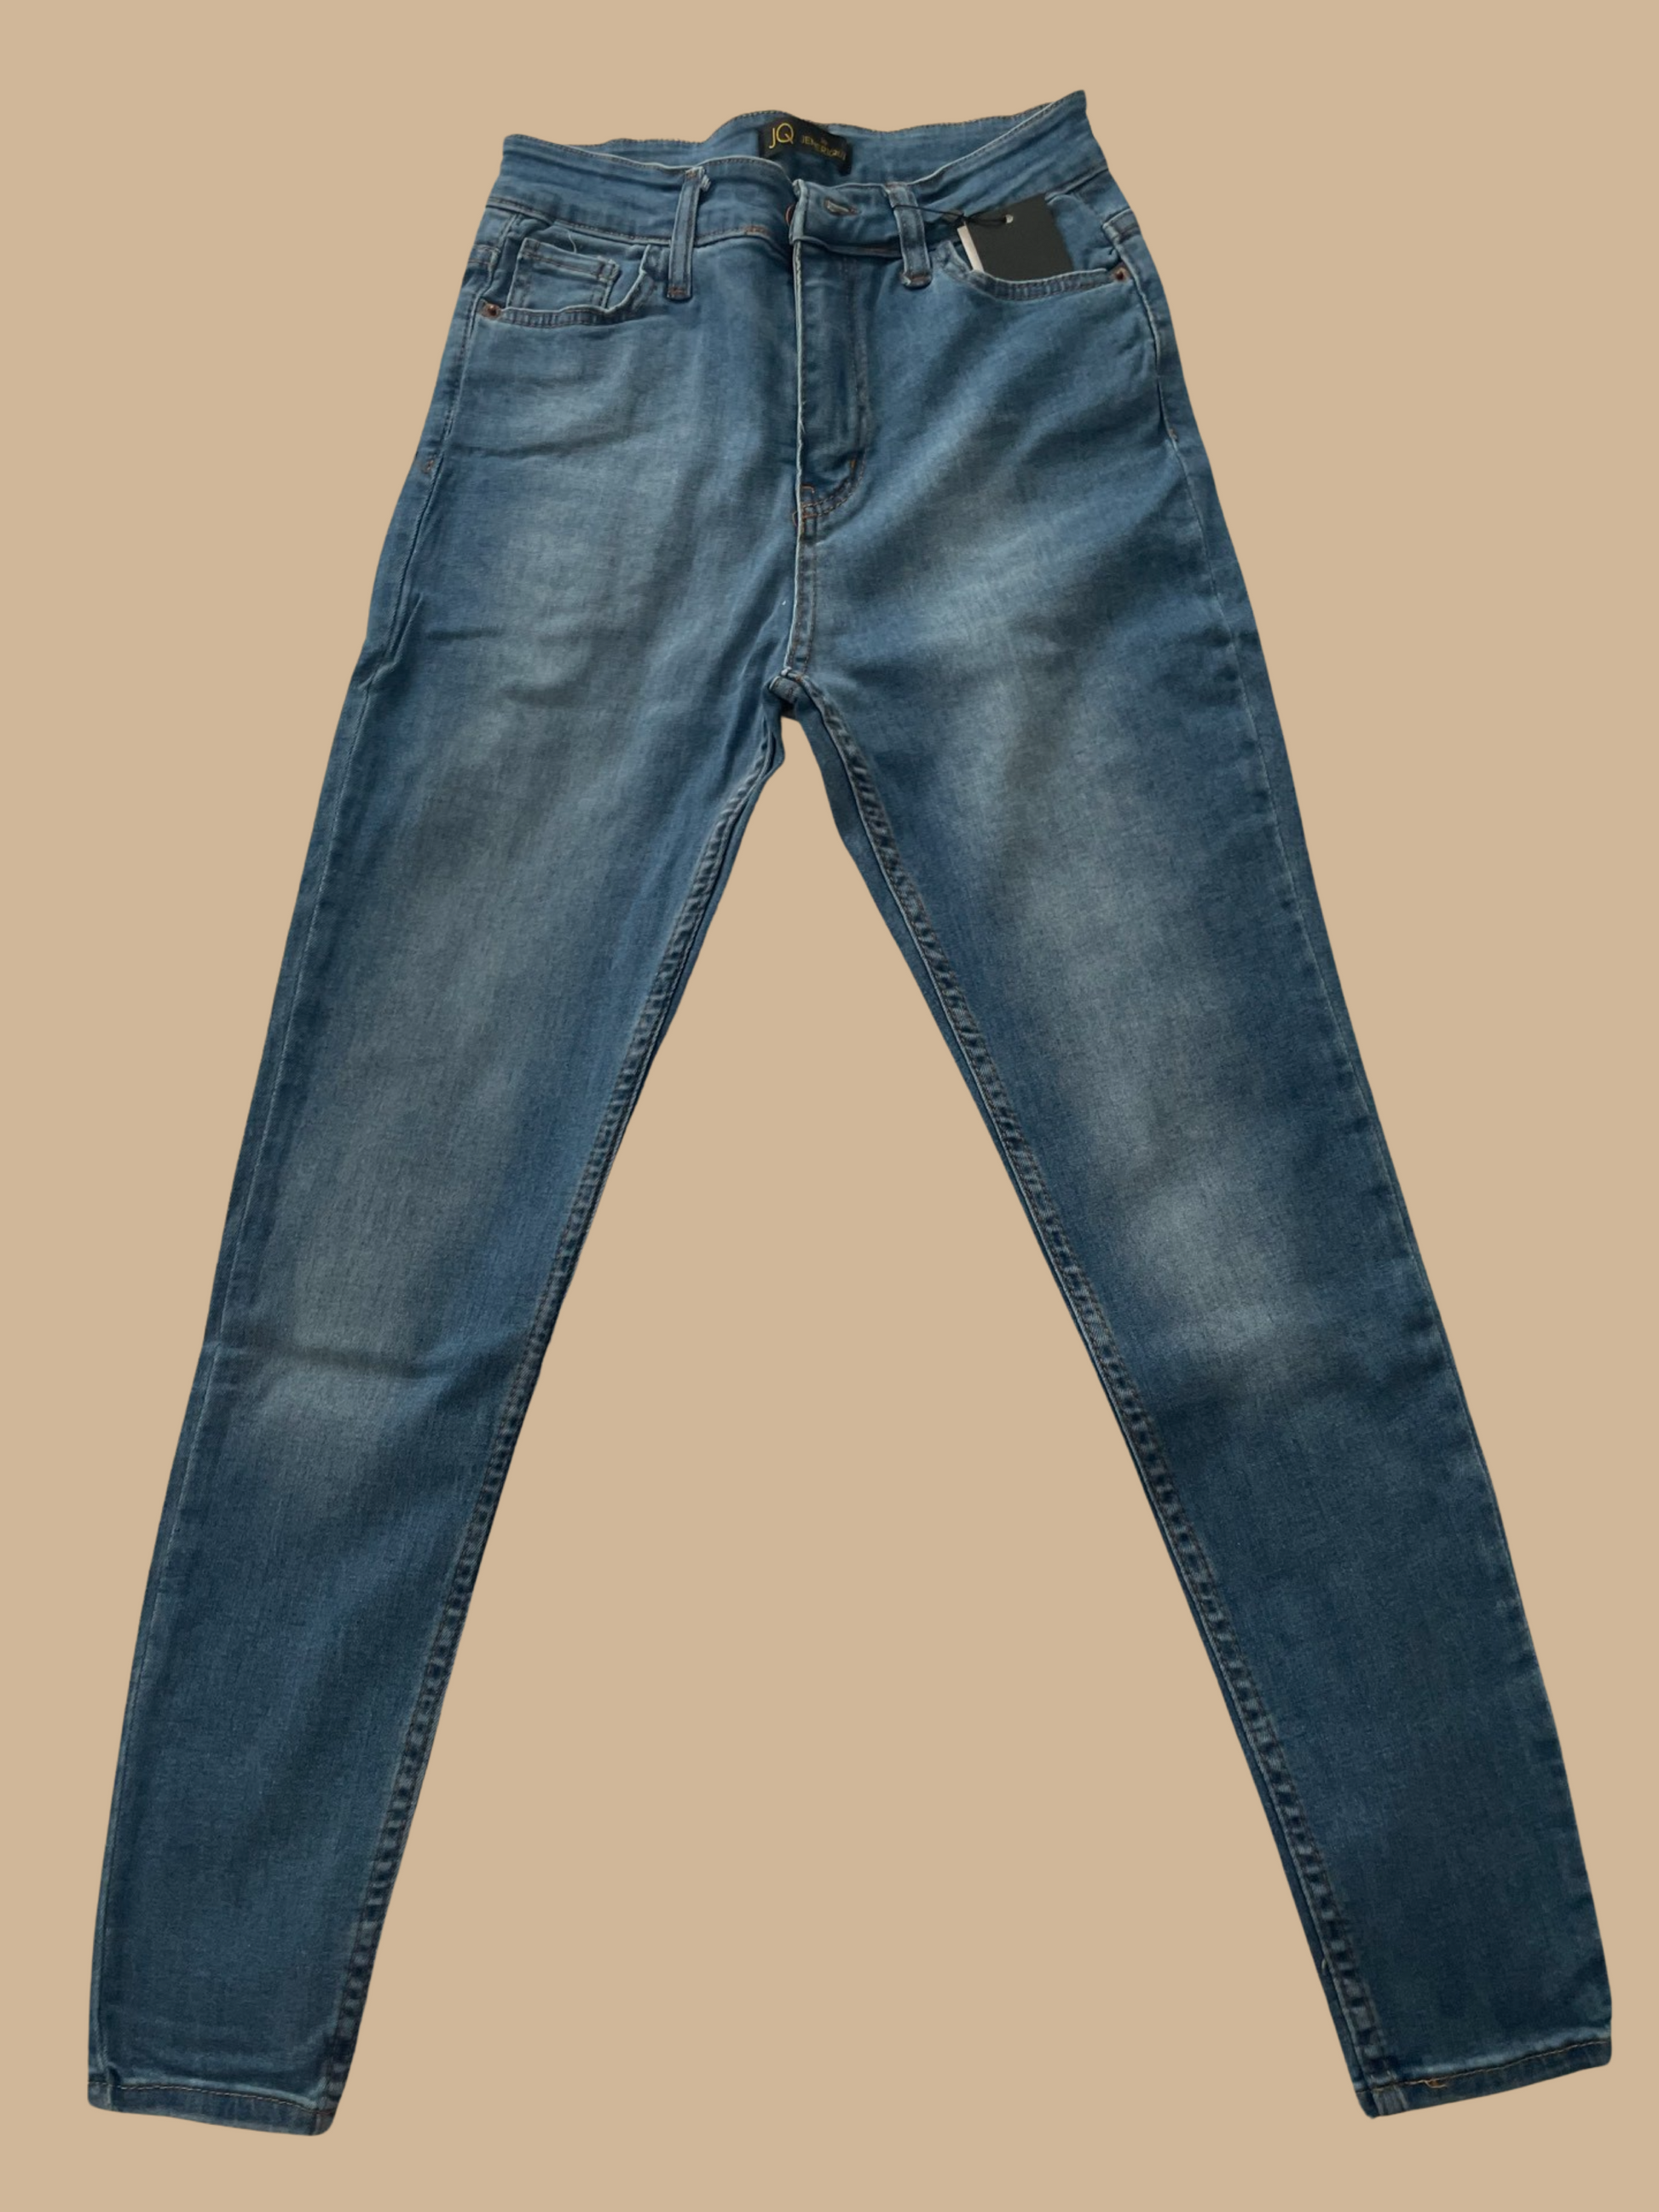 Light Blue Jeans – DENNC BOUTIQUE LLC